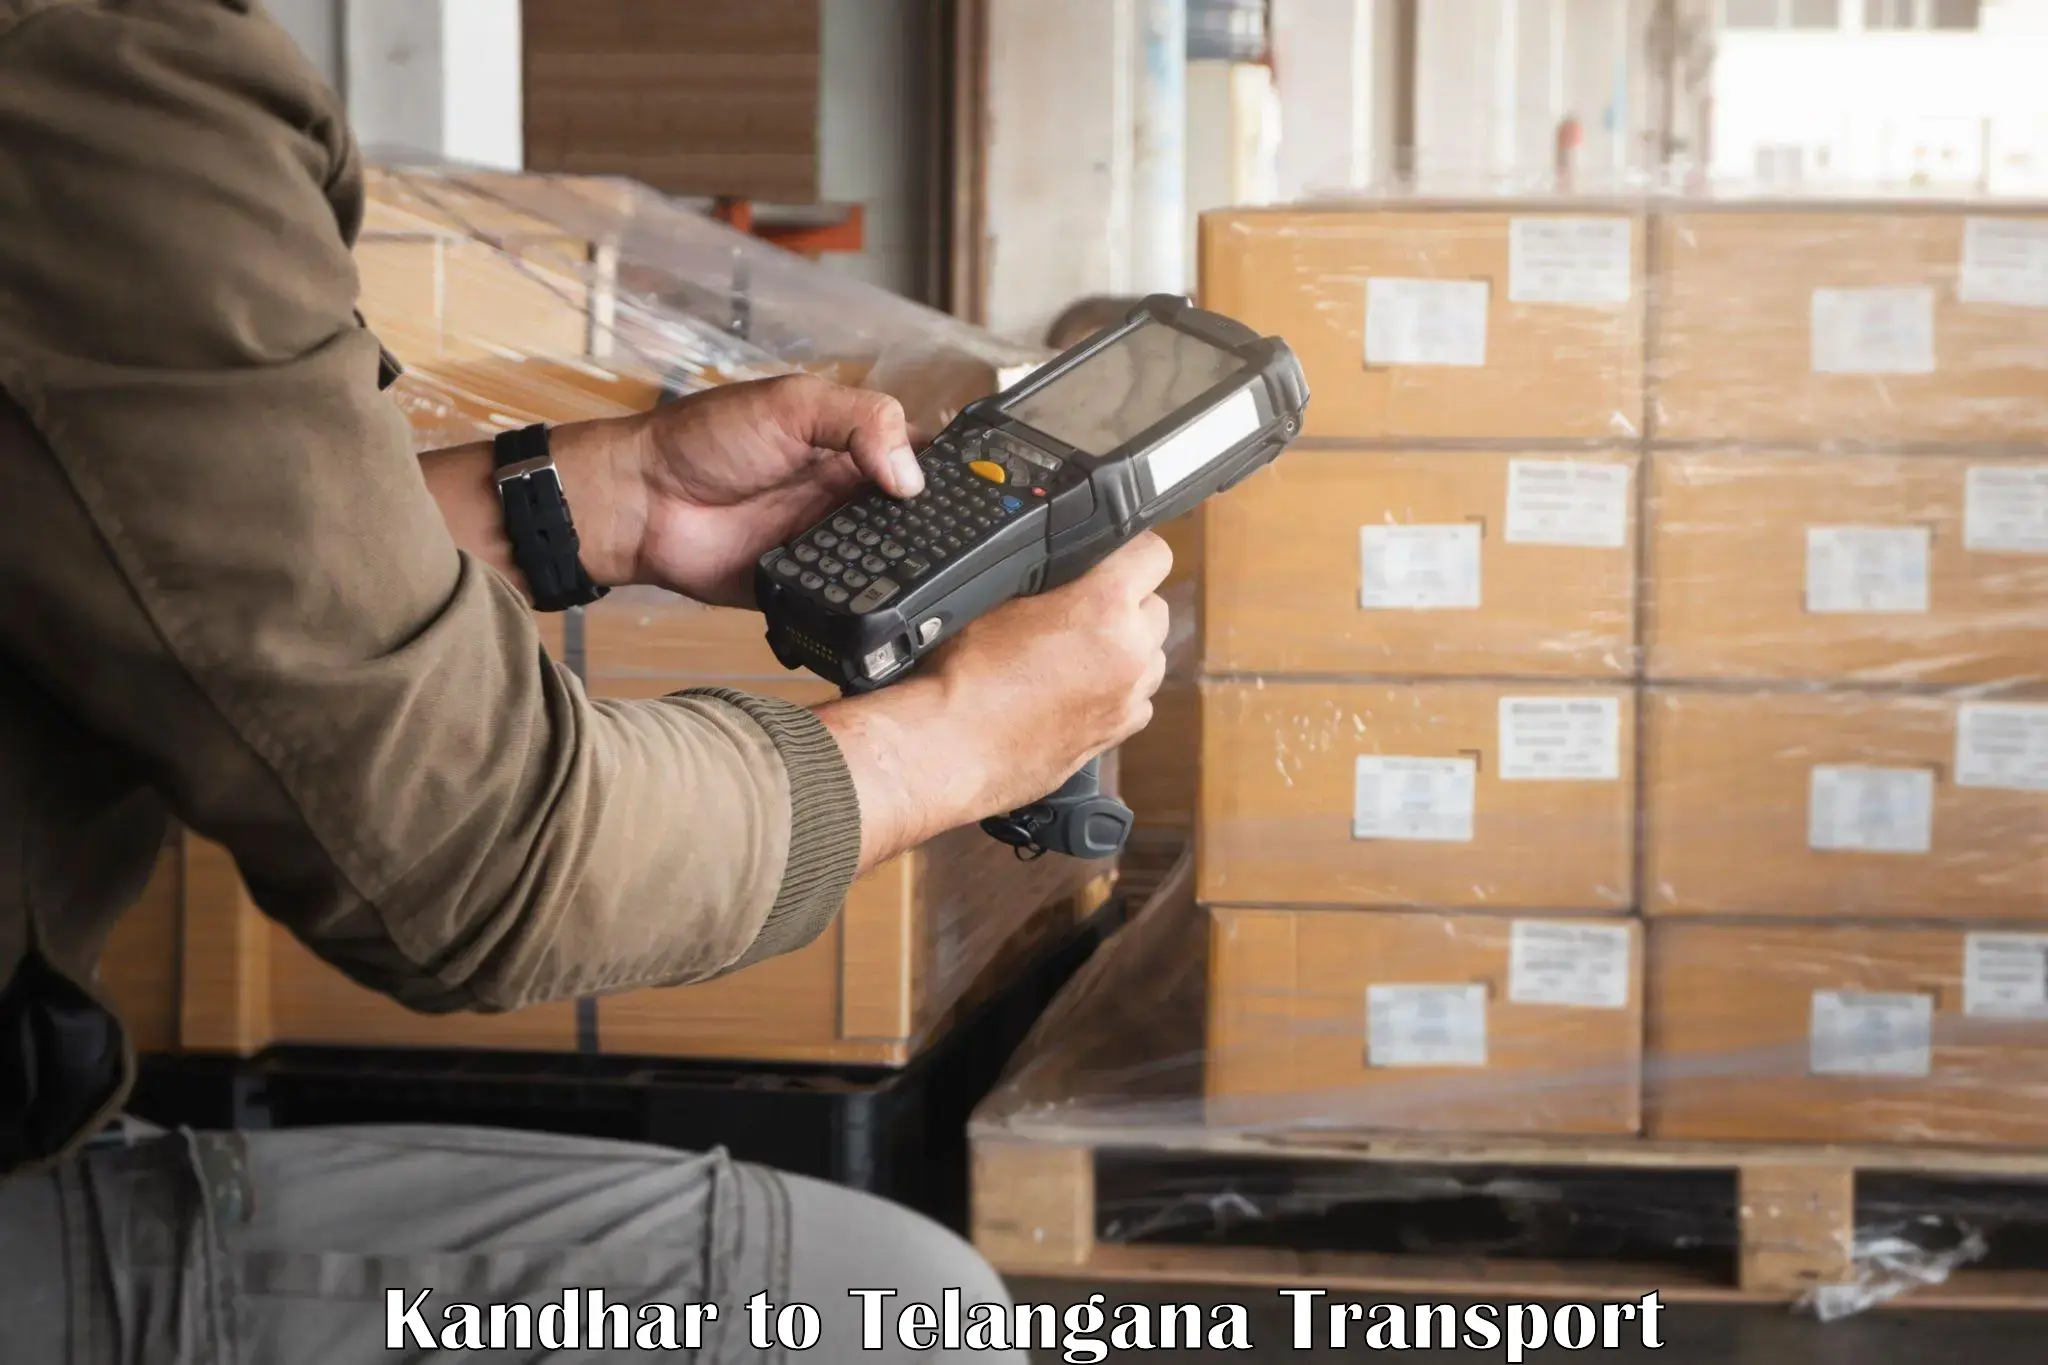 Cargo transport services Kandhar to Odela